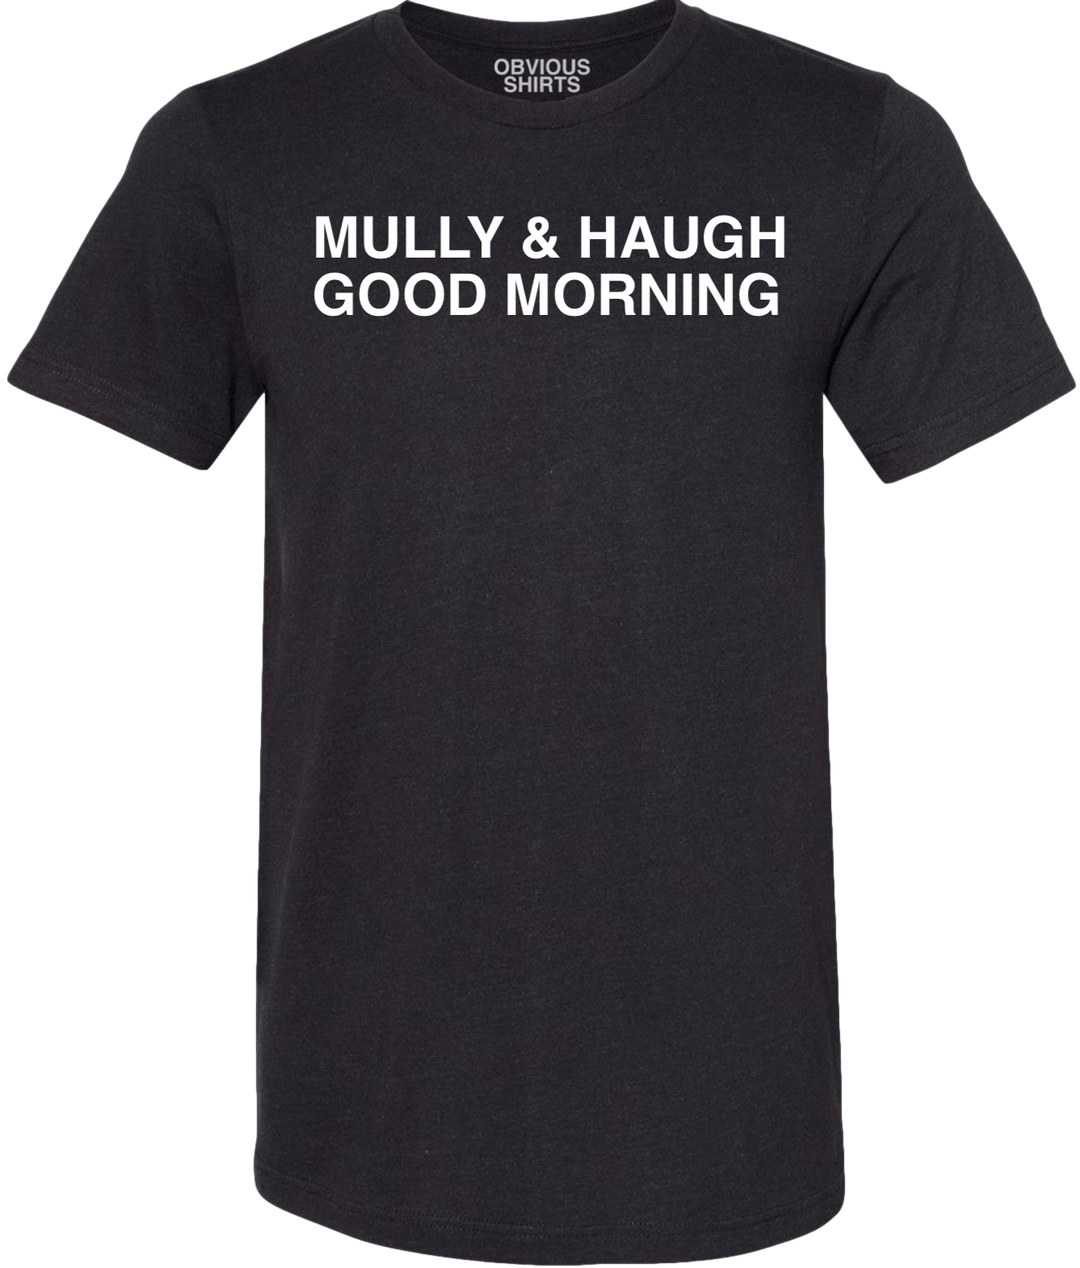 MULLY & HAUGH GOOD MORNING. (BLACK) - OBVIOUS SHIRTS